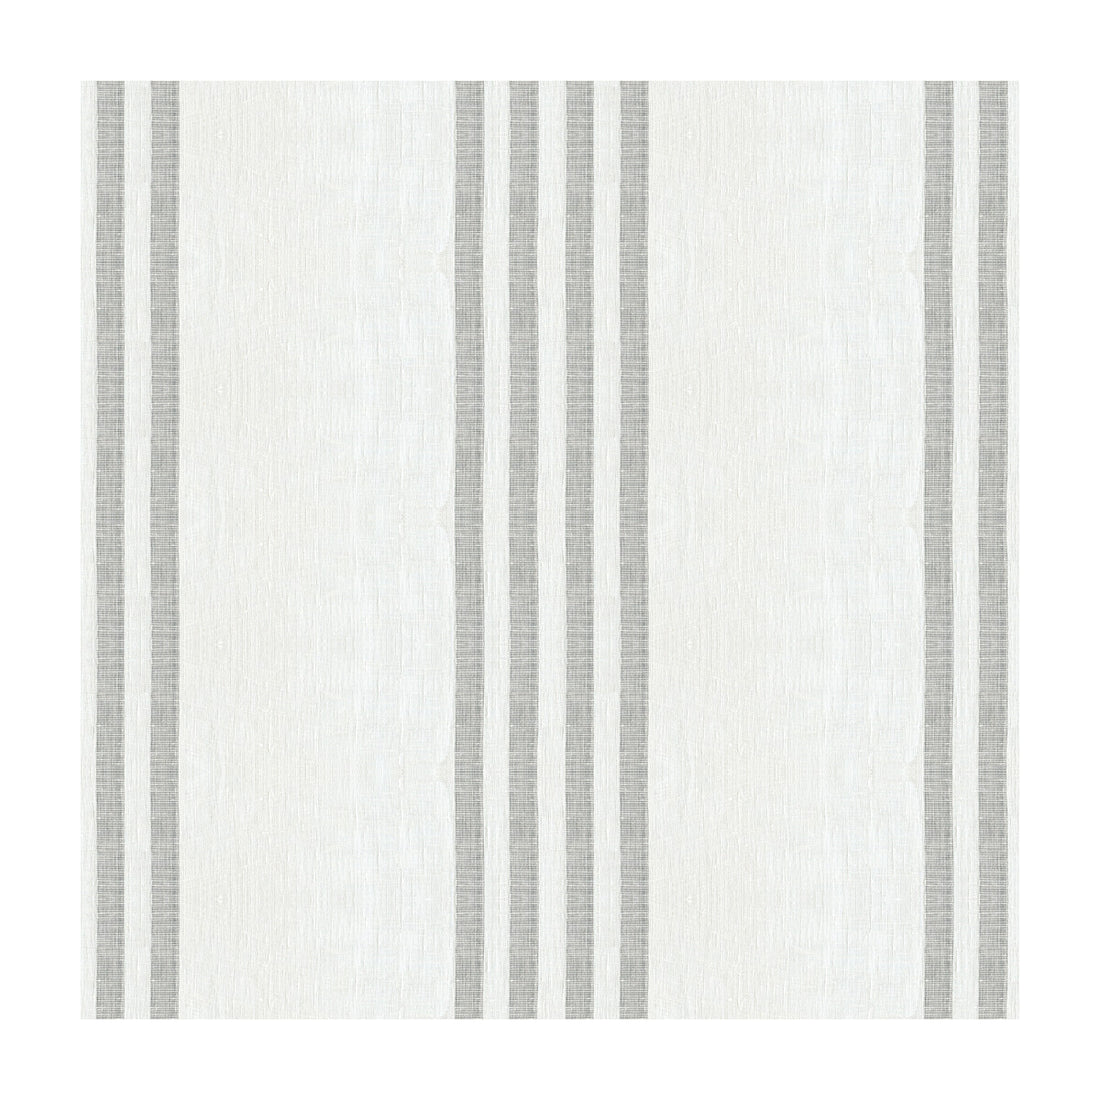 Kravet Design fabric in 4043-11 color - pattern 4043.11.0 - by Kravet Design